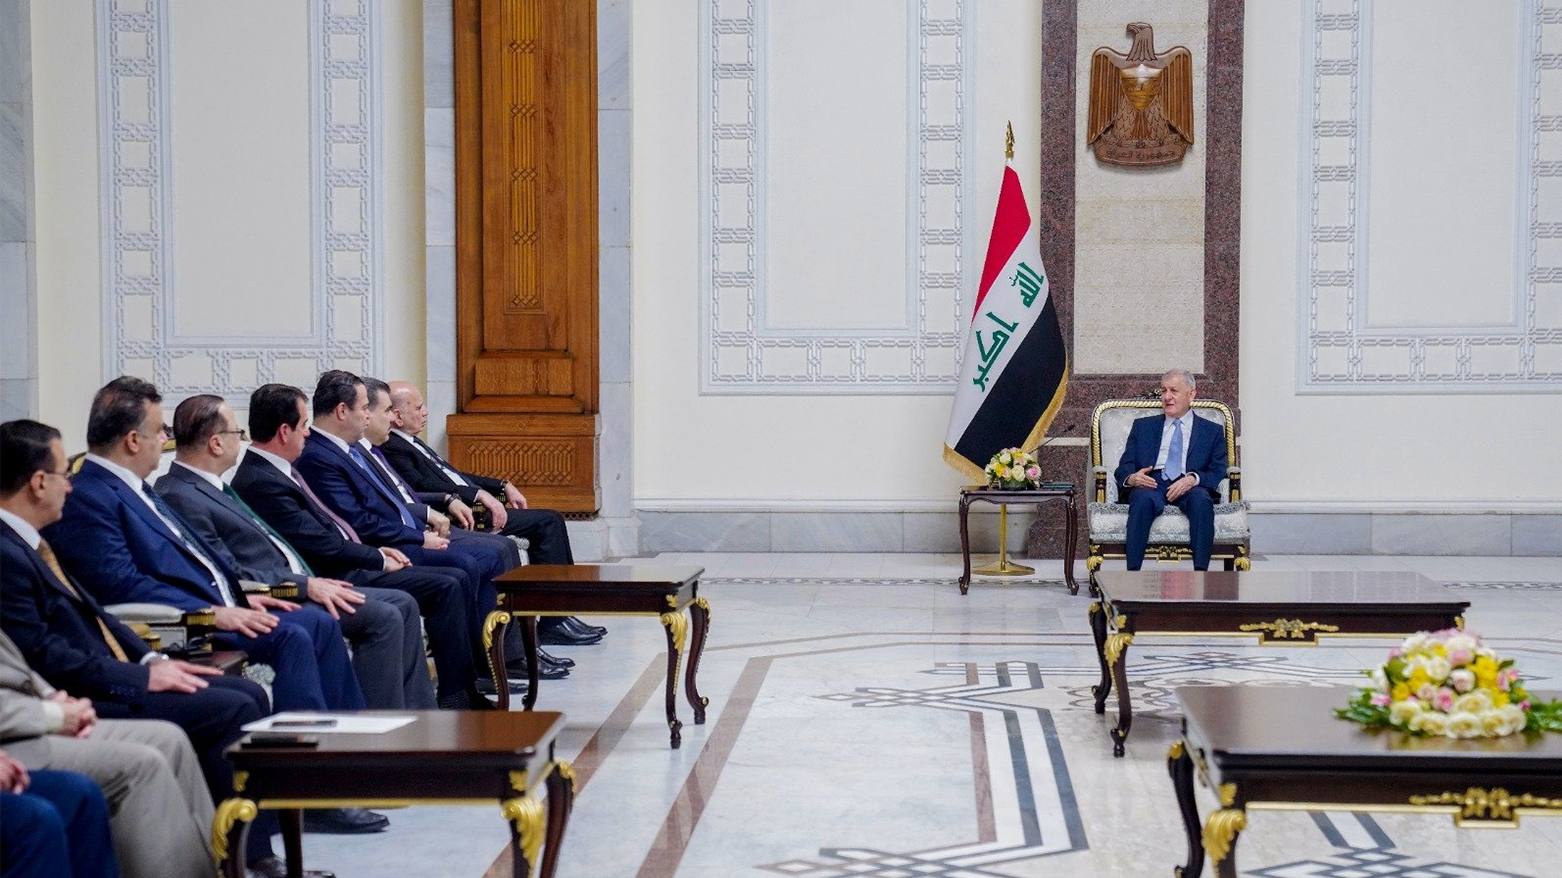 الرئيس العراقي يدعو بغداد لإرسال رواتب موظفي الإقليم